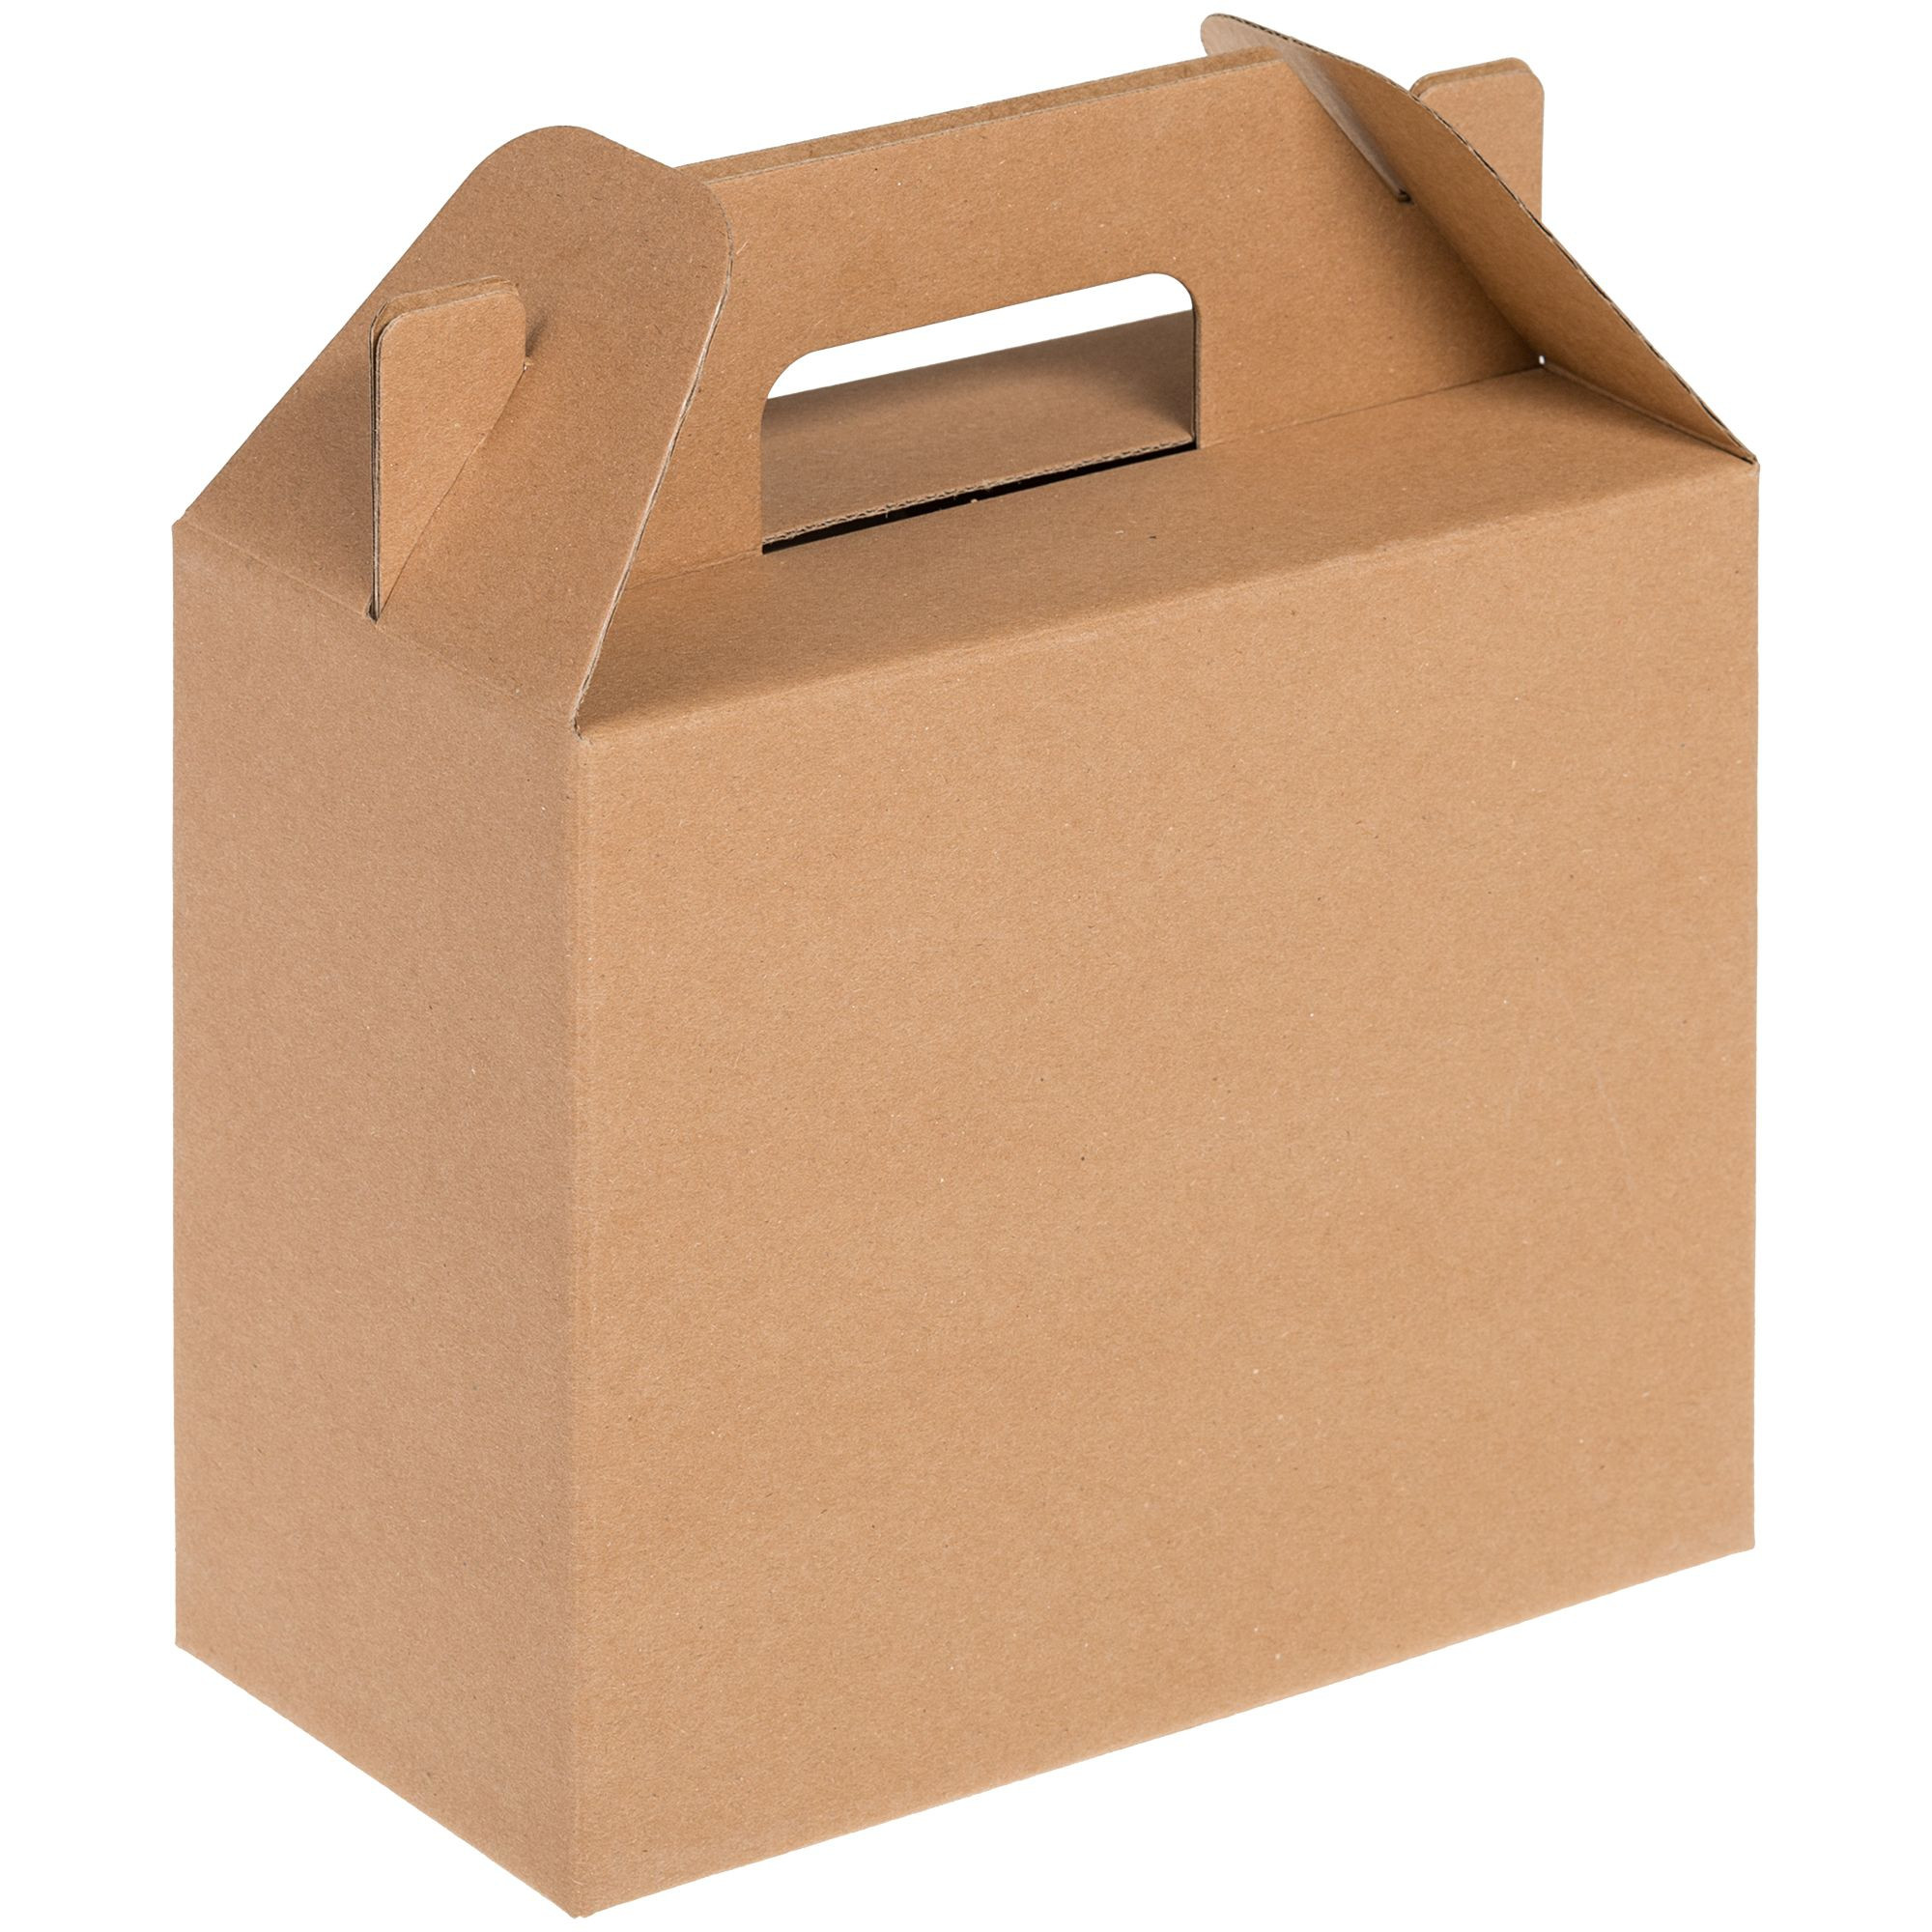 Купить коробку в орле. Коробка самосборная крафт. Коробка in Case l, крафт (арт. 6936.00). Коробка самосборная 35*35*10. Коробка самосборная крафт 23х23х8 см.